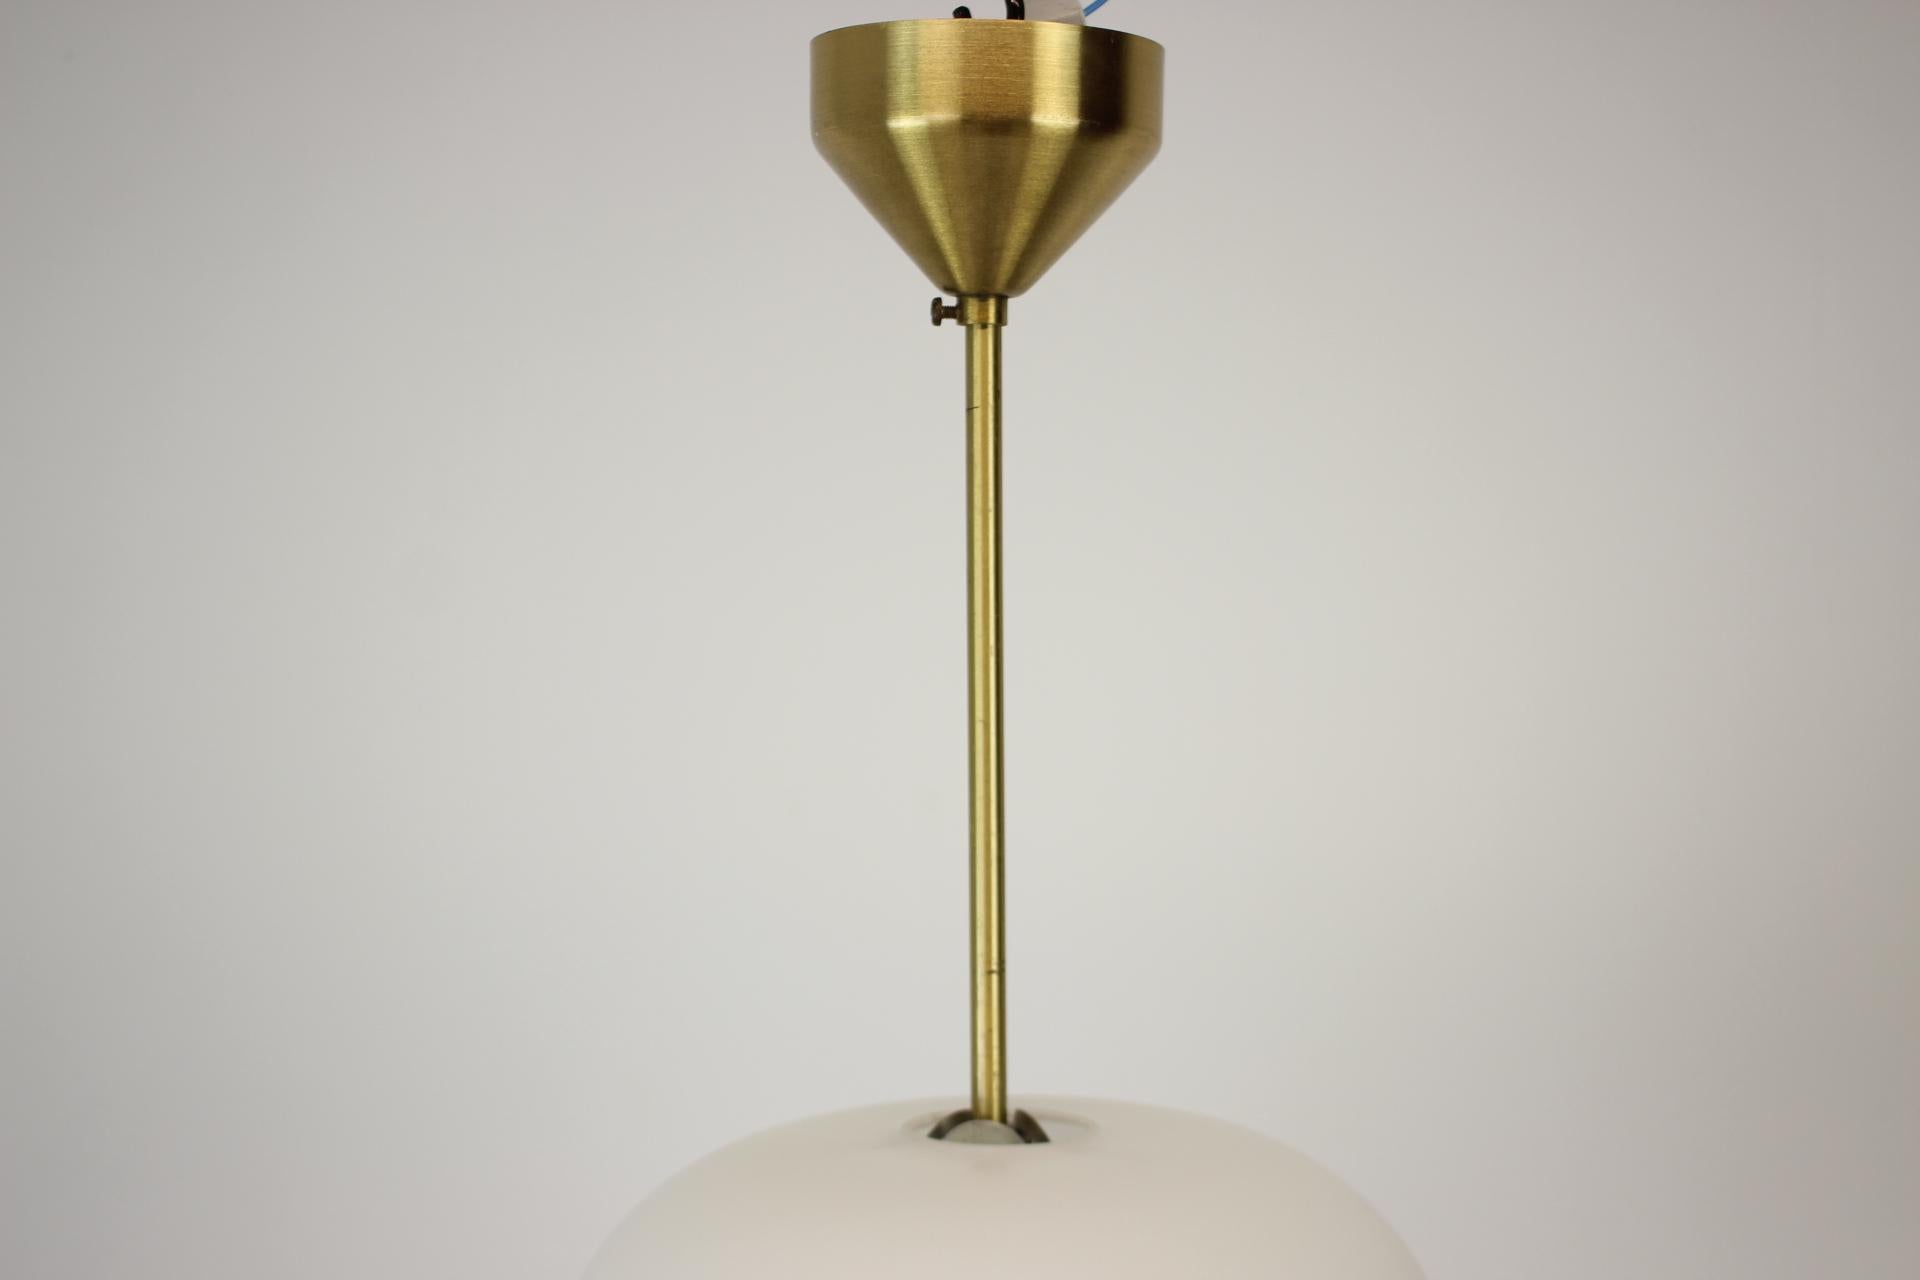 Beautiful milk glass pendant.
1x60W, E25-E27 bulb
US wiring compatible.